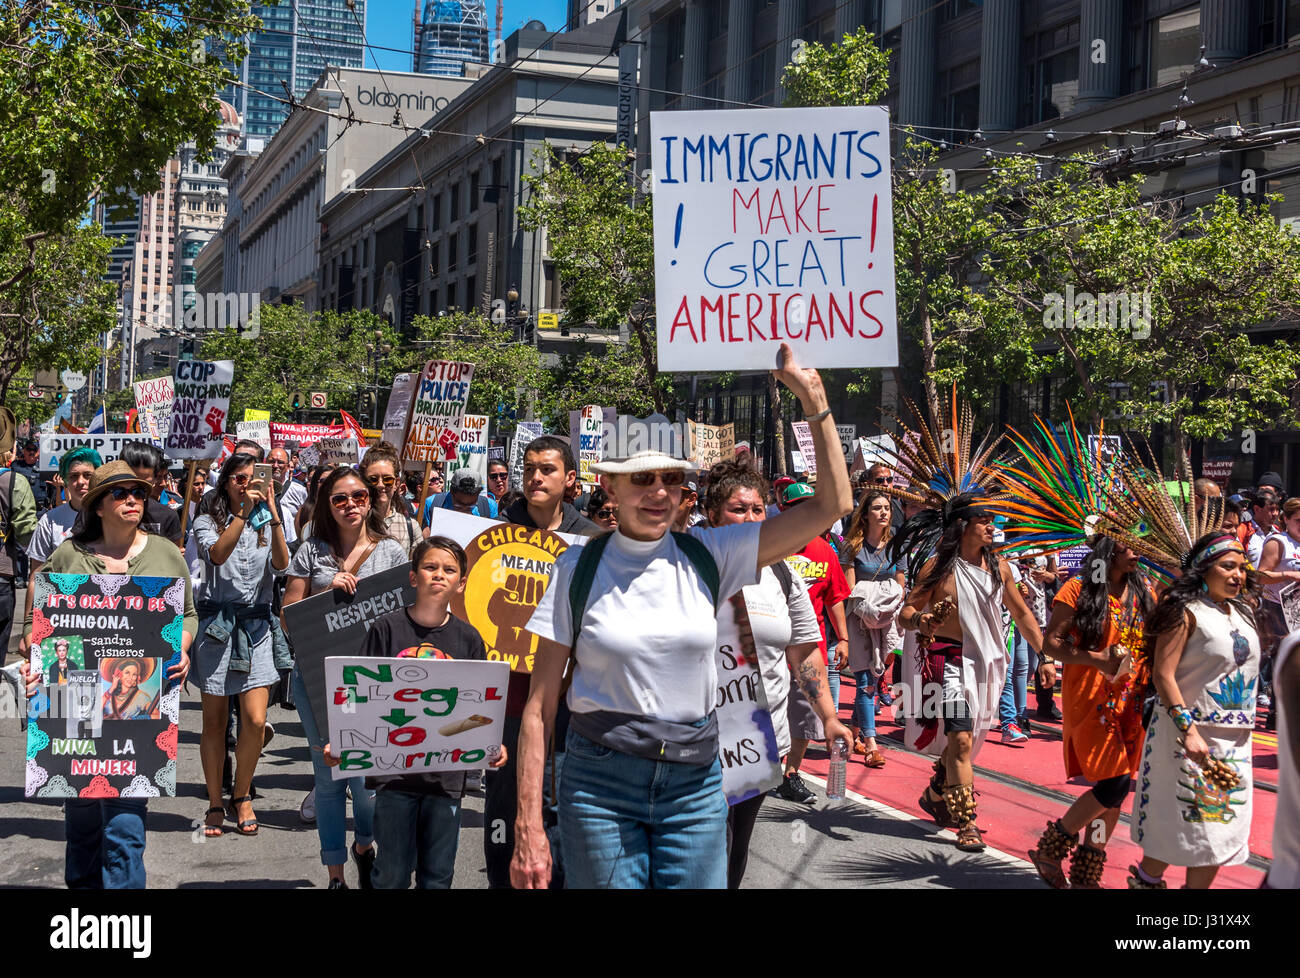 San Francisco, Californie, USA. 1er mai 2017. Une femme marche dans la foule avec un signe de la lecture, "Les immigrés font de grands Américains !' Le 1 mai 2017, plus de 40 villes aux États-Unis ont organisé des manifestations de protestation pour la 'journée sans un immigrant.", à San Francisco, des milliers de personnes sont descendues dans la rue pour protester contre les politiques d'immigration d'atout et de montrer leur soutien pour les droits des immigrants. Credit : Shelly Rivoli/Alamy Live News Banque D'Images